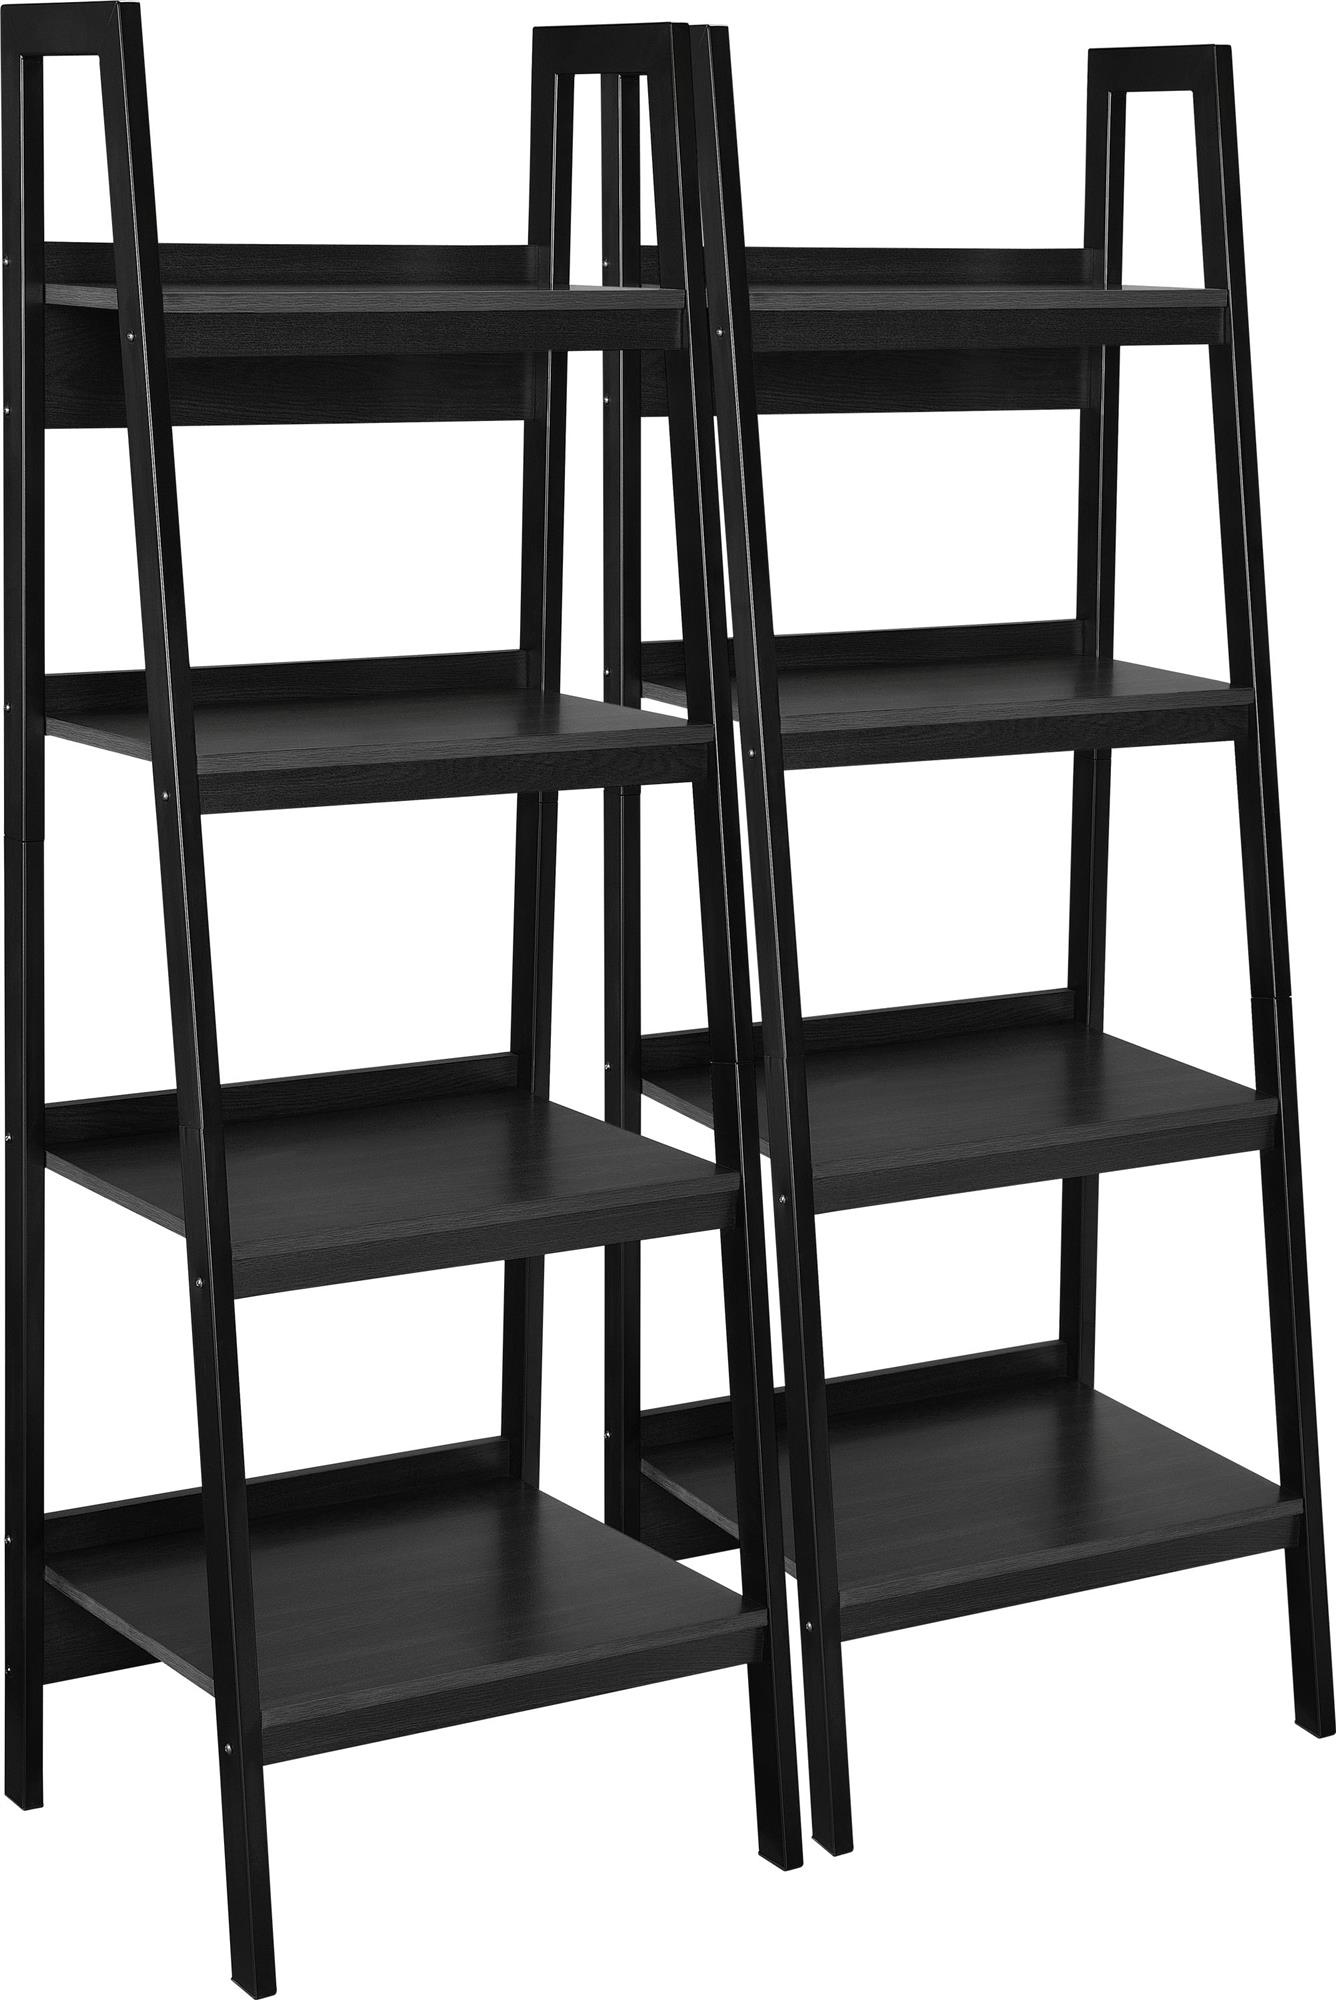 Ameriwood Home Hayes 4 Shelf Ladder Bookcase Bundle, Black - image 4 of 9